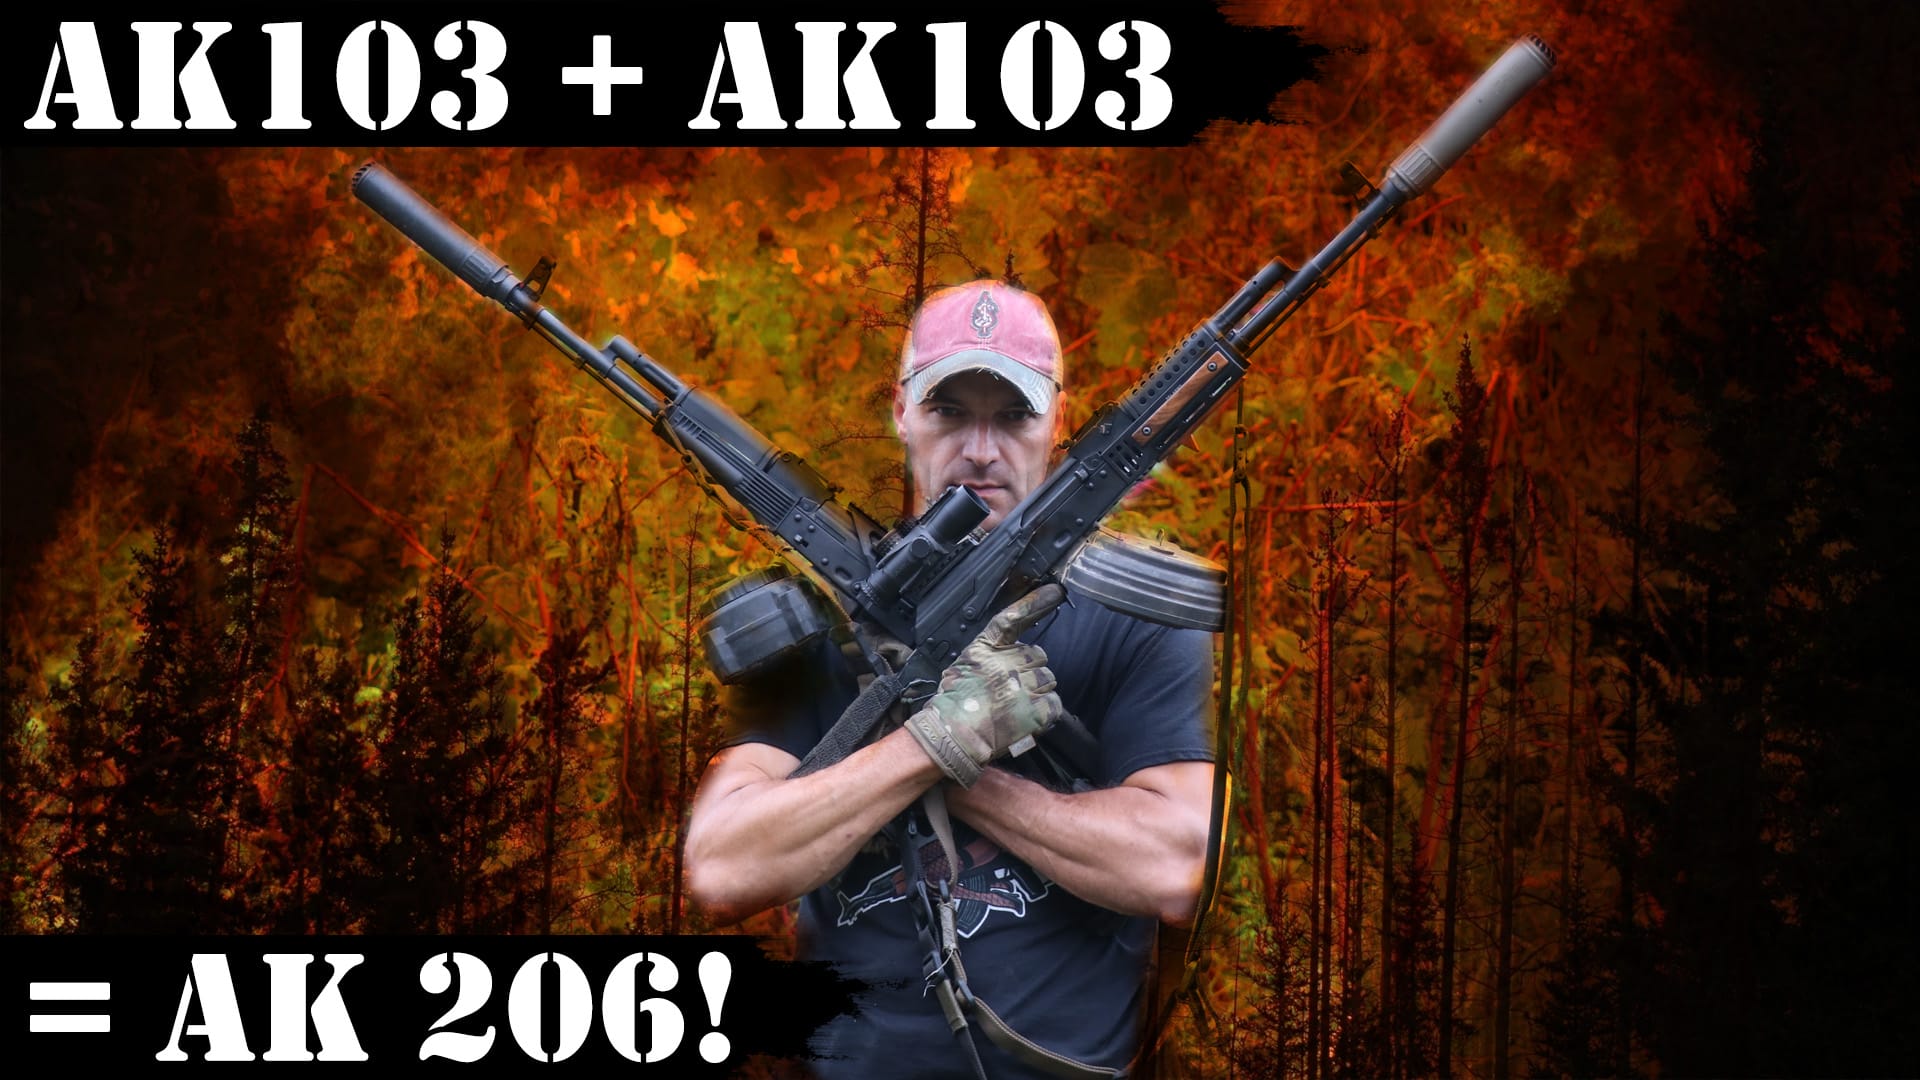 2x AK103 = AK 206! Right?